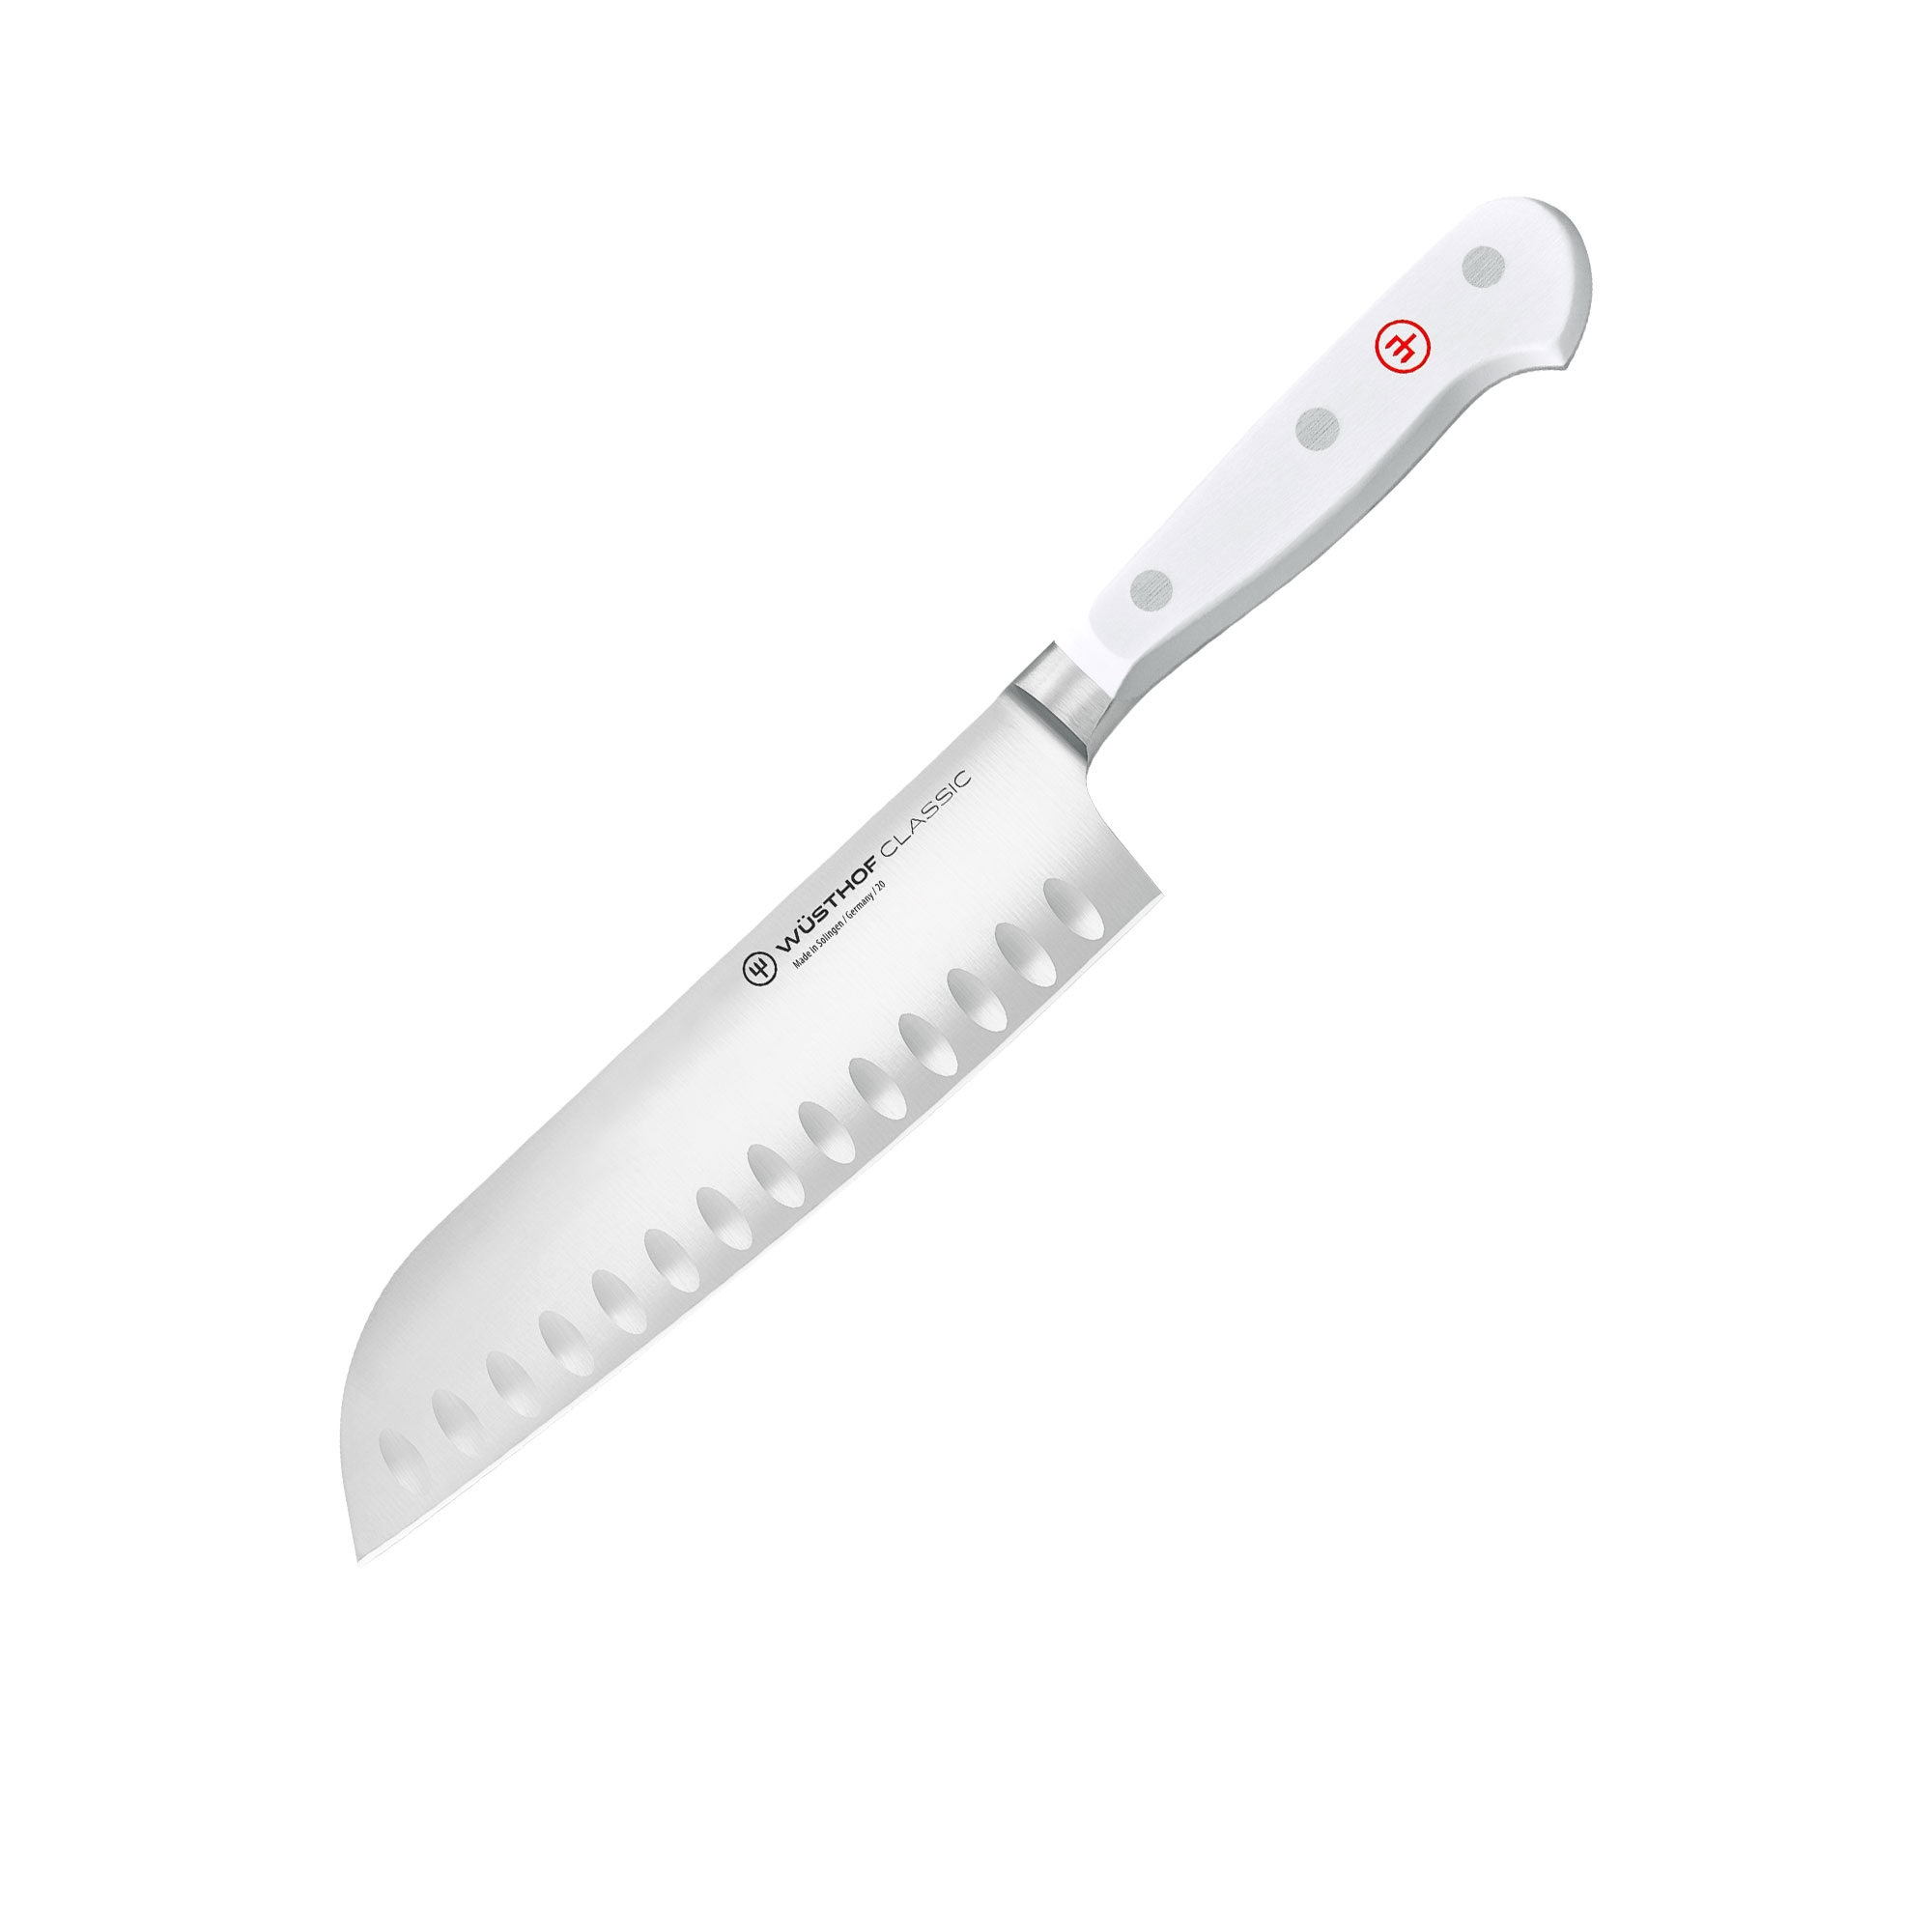 Wusthof Classic White Santoku Knife 17cm Image 1